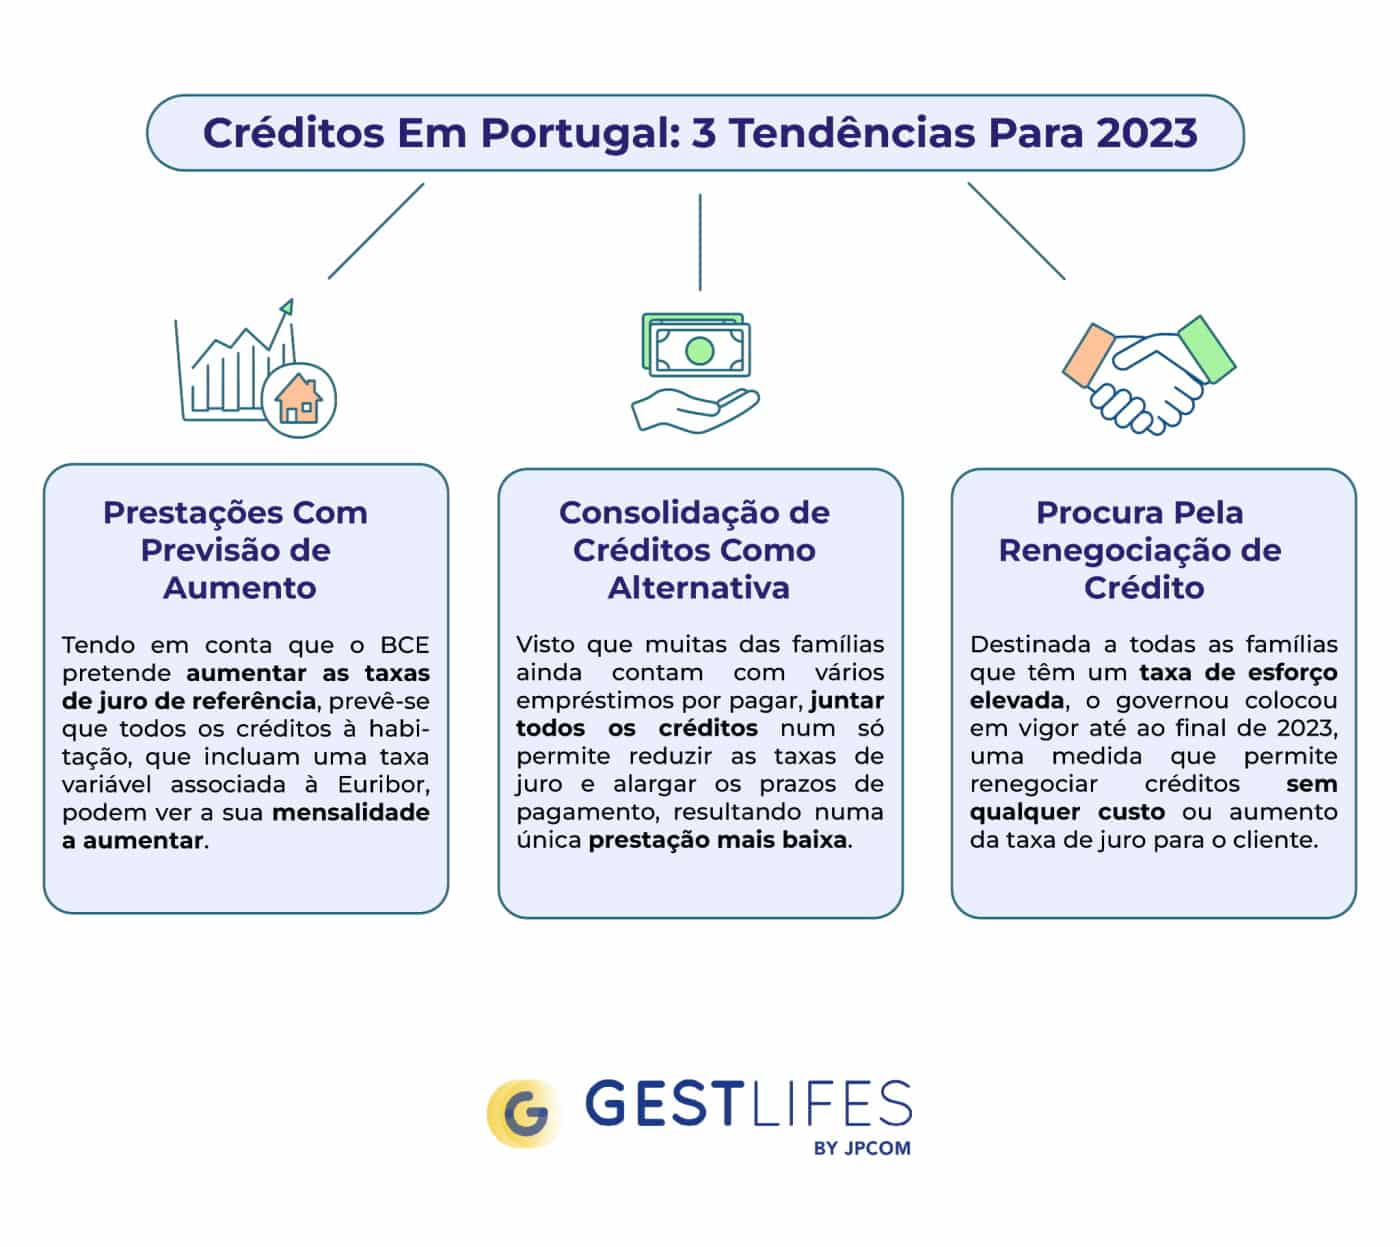 Créditos em Portugal: 3 tendências para 2023